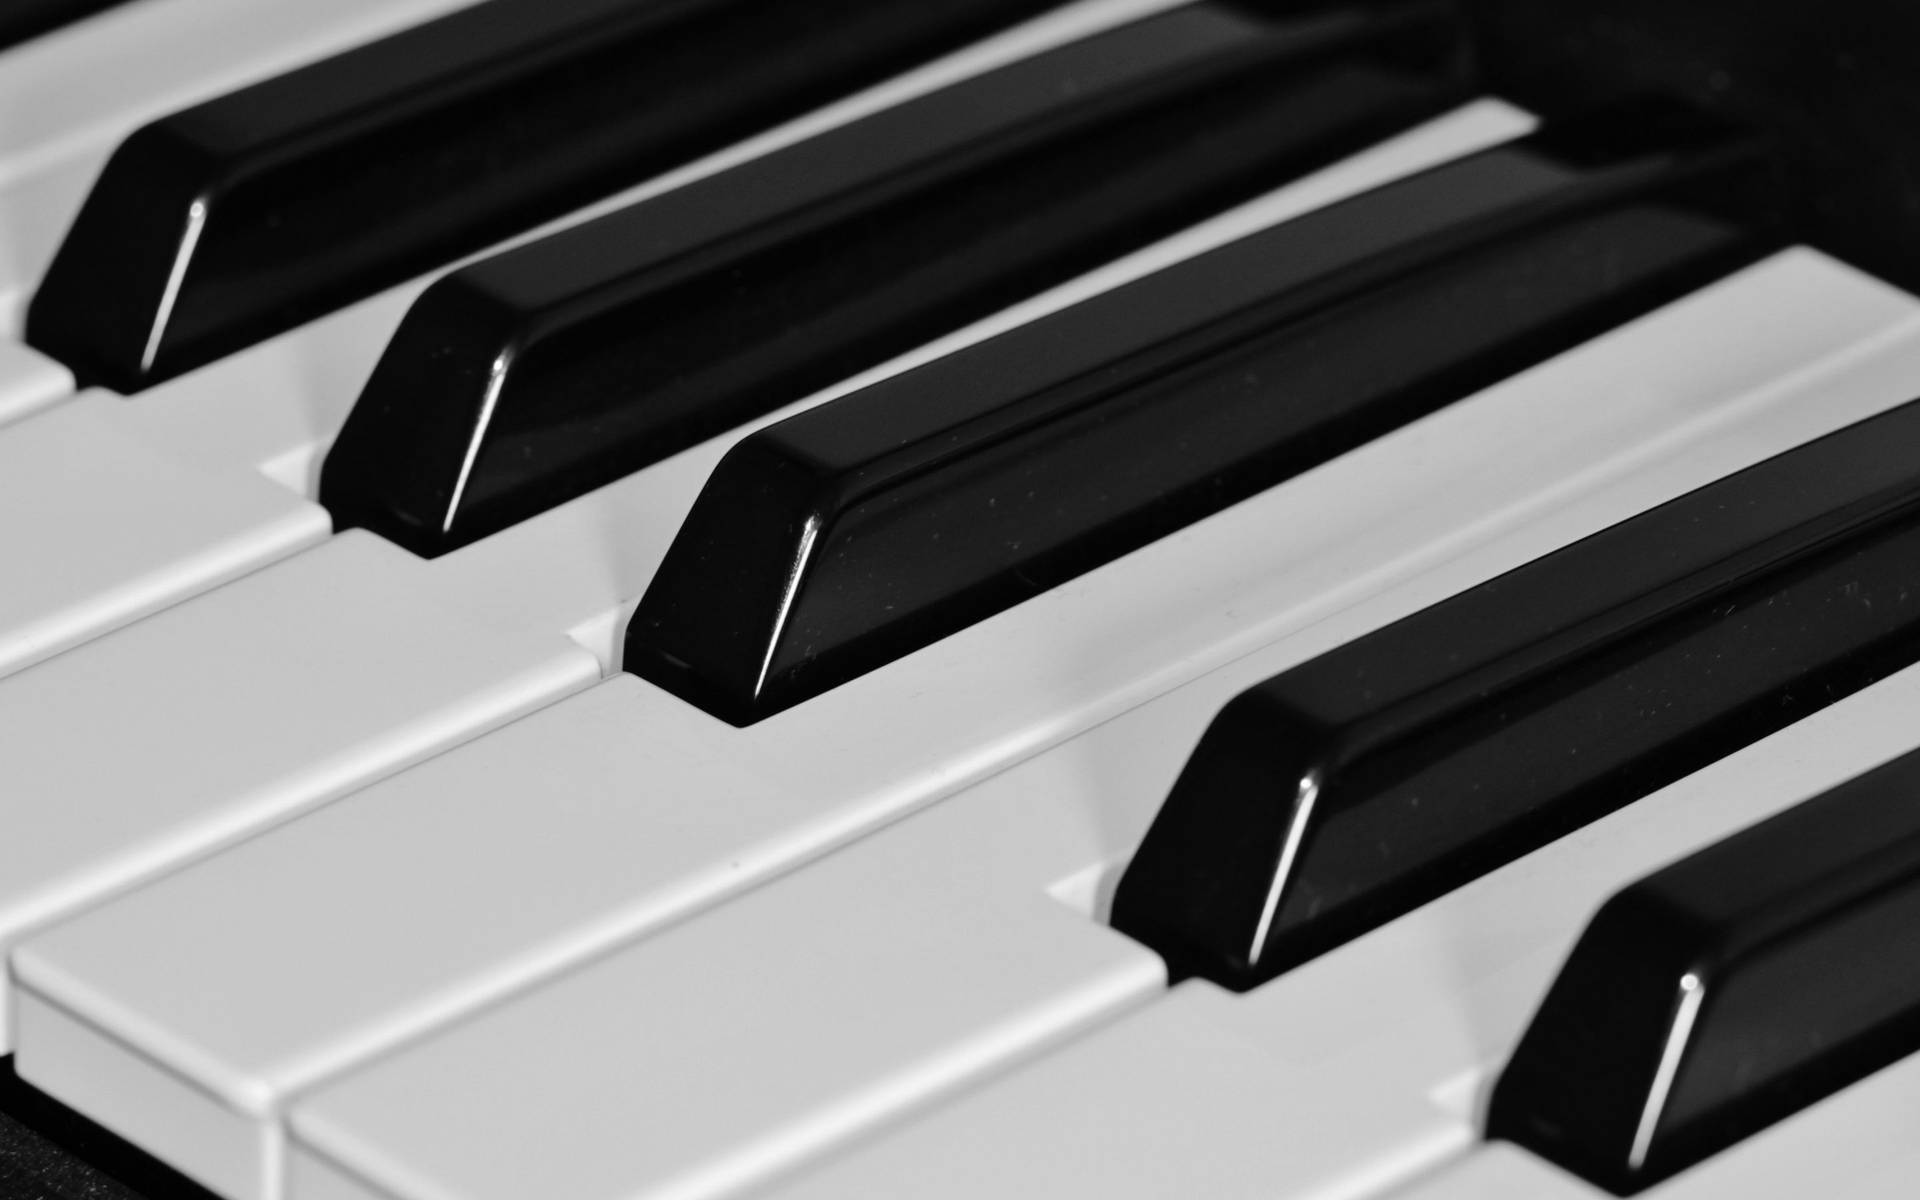 Piano Shiny Black Keys Background